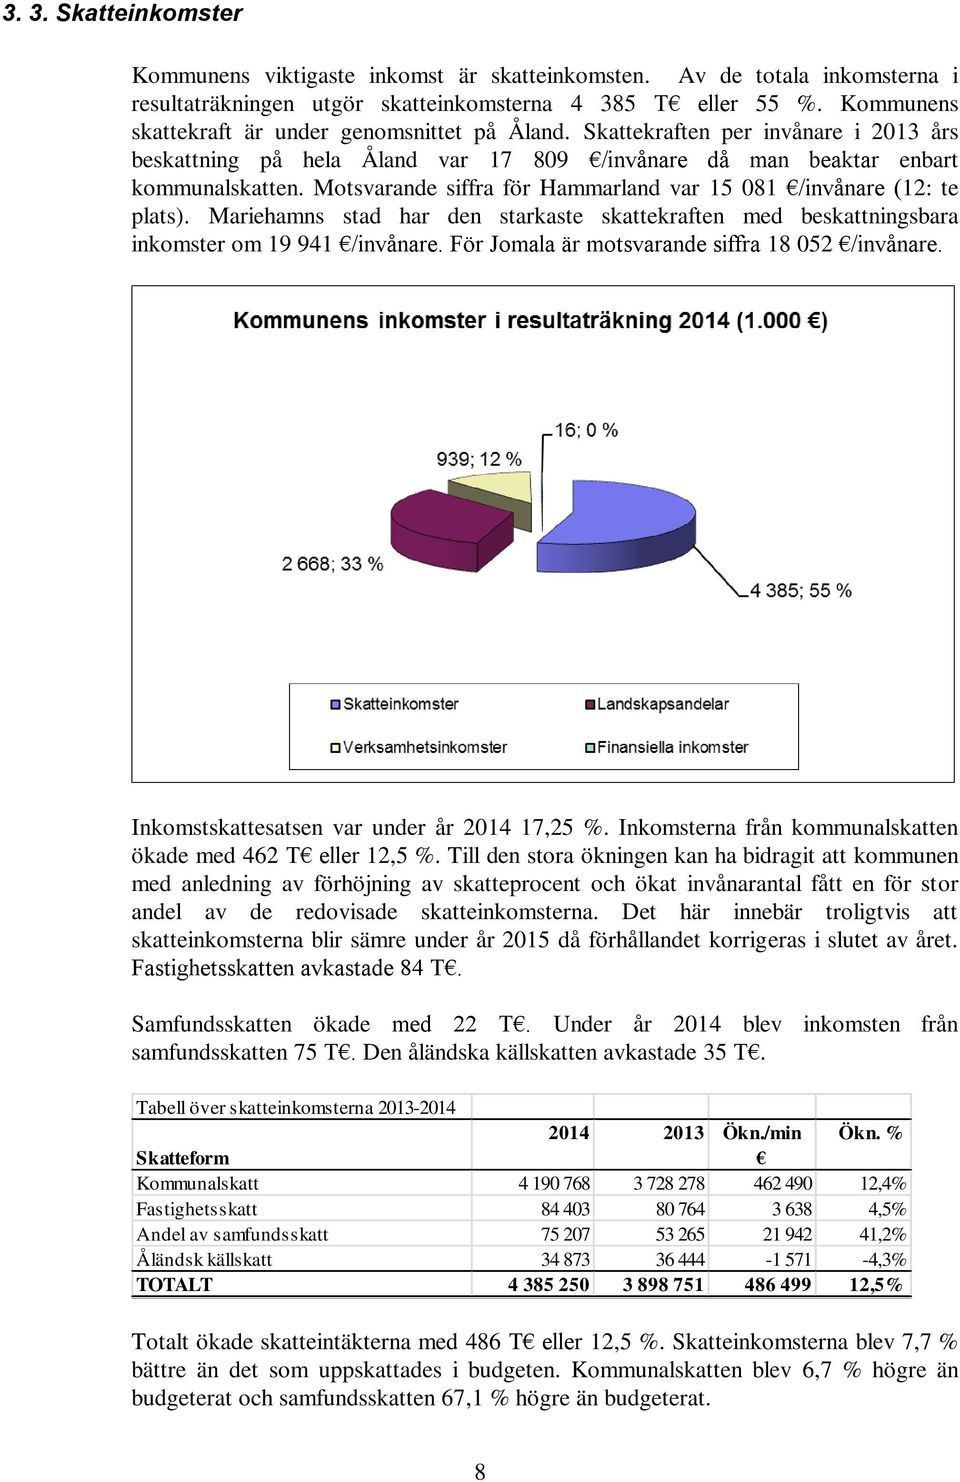 Motsvarande siffra för Hammarland var 15 081 /invånare (12: te plats). Mariehamns stad har den starkaste skattekraften med beskattningsbara inkomster om 19 941 /invånare.